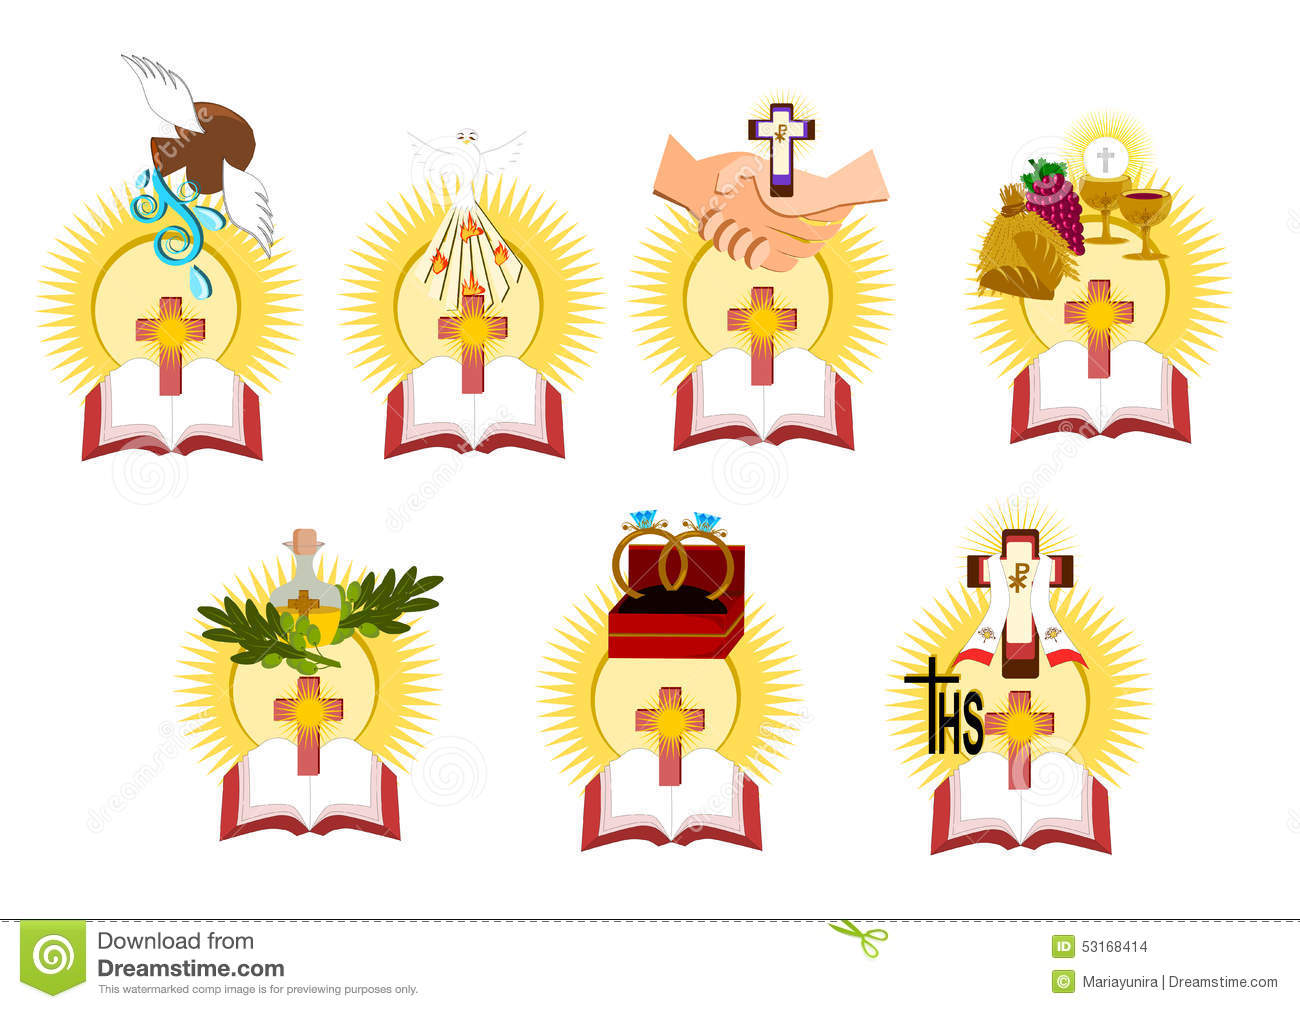 Seven Sacraments Symbols